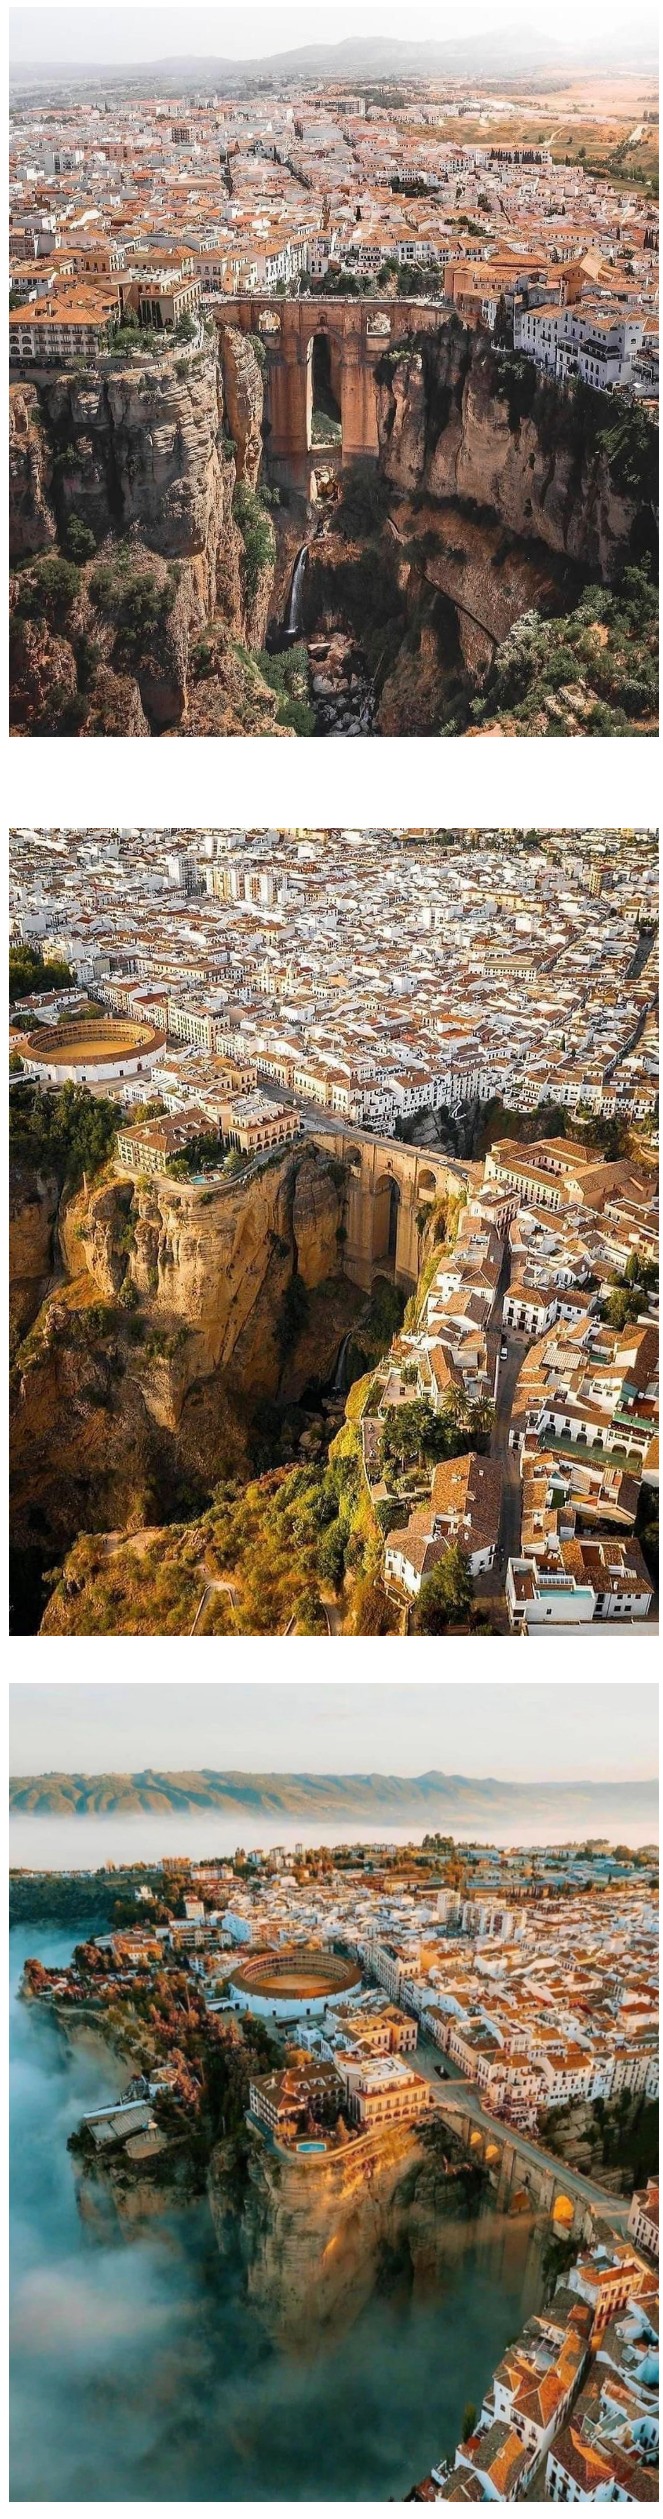 판타지 세계에 나올 듯한 스페인 협곡 도시